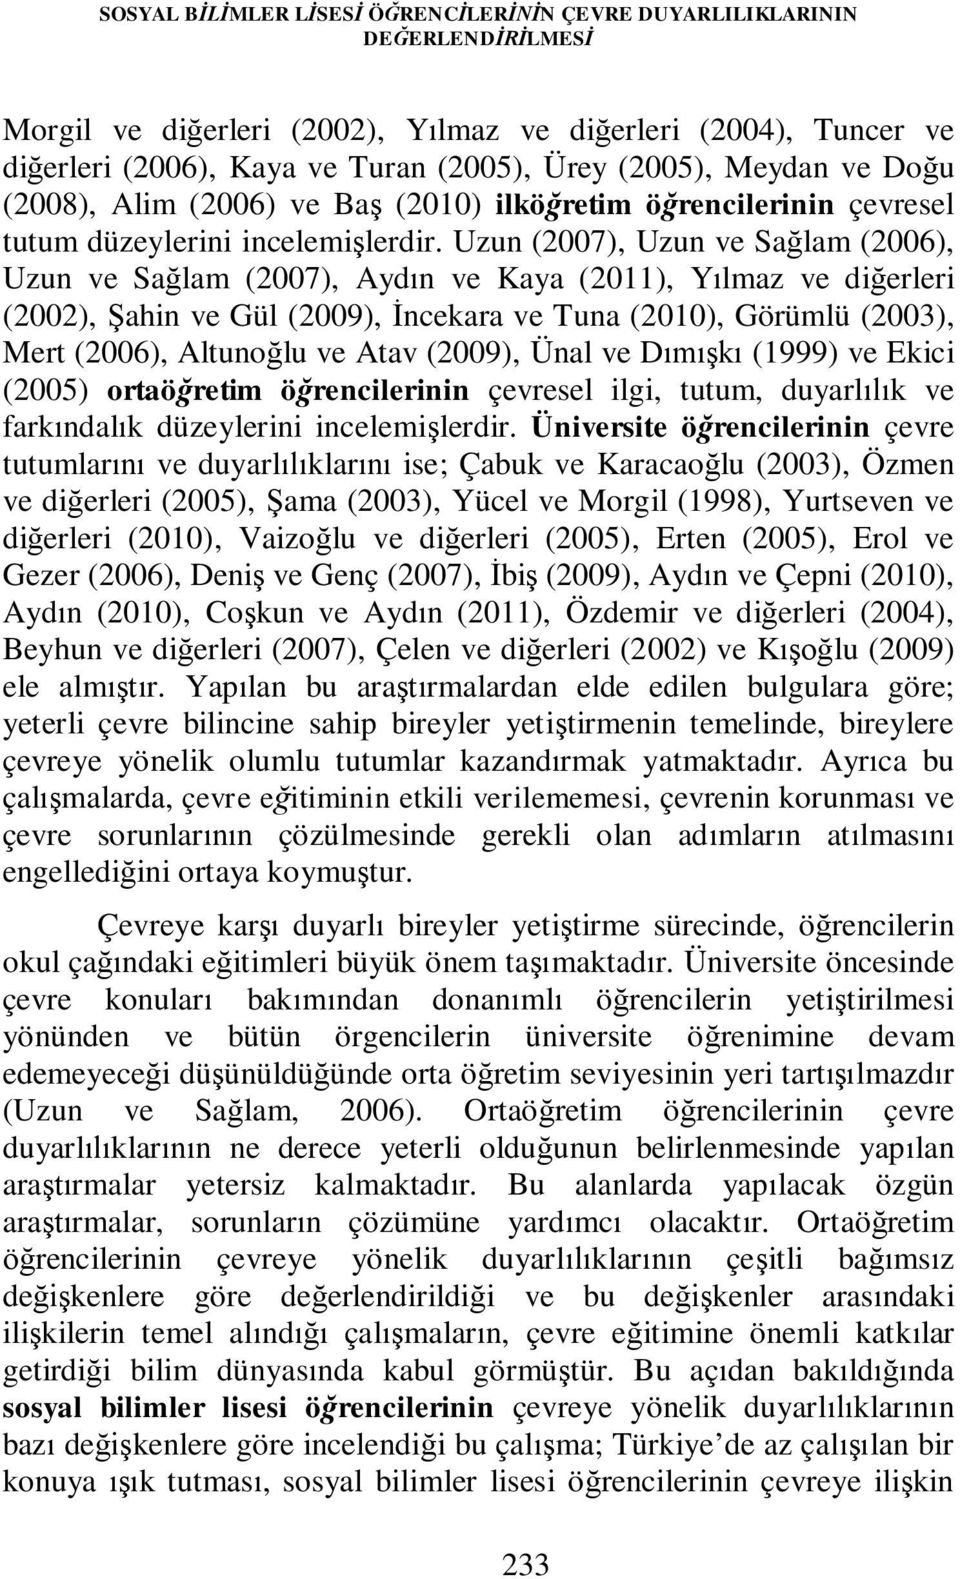 Uzun (2007), Uzun ve Sağlam (2006), Uzun ve Sağlam (2007), Aydın ve Kaya (2011), Yılmaz ve diğerleri (2002), Şahin ve Gül (2009), İncekara ve Tuna (2010), Görümlü (2003), Mert (2006), Altunoğlu ve